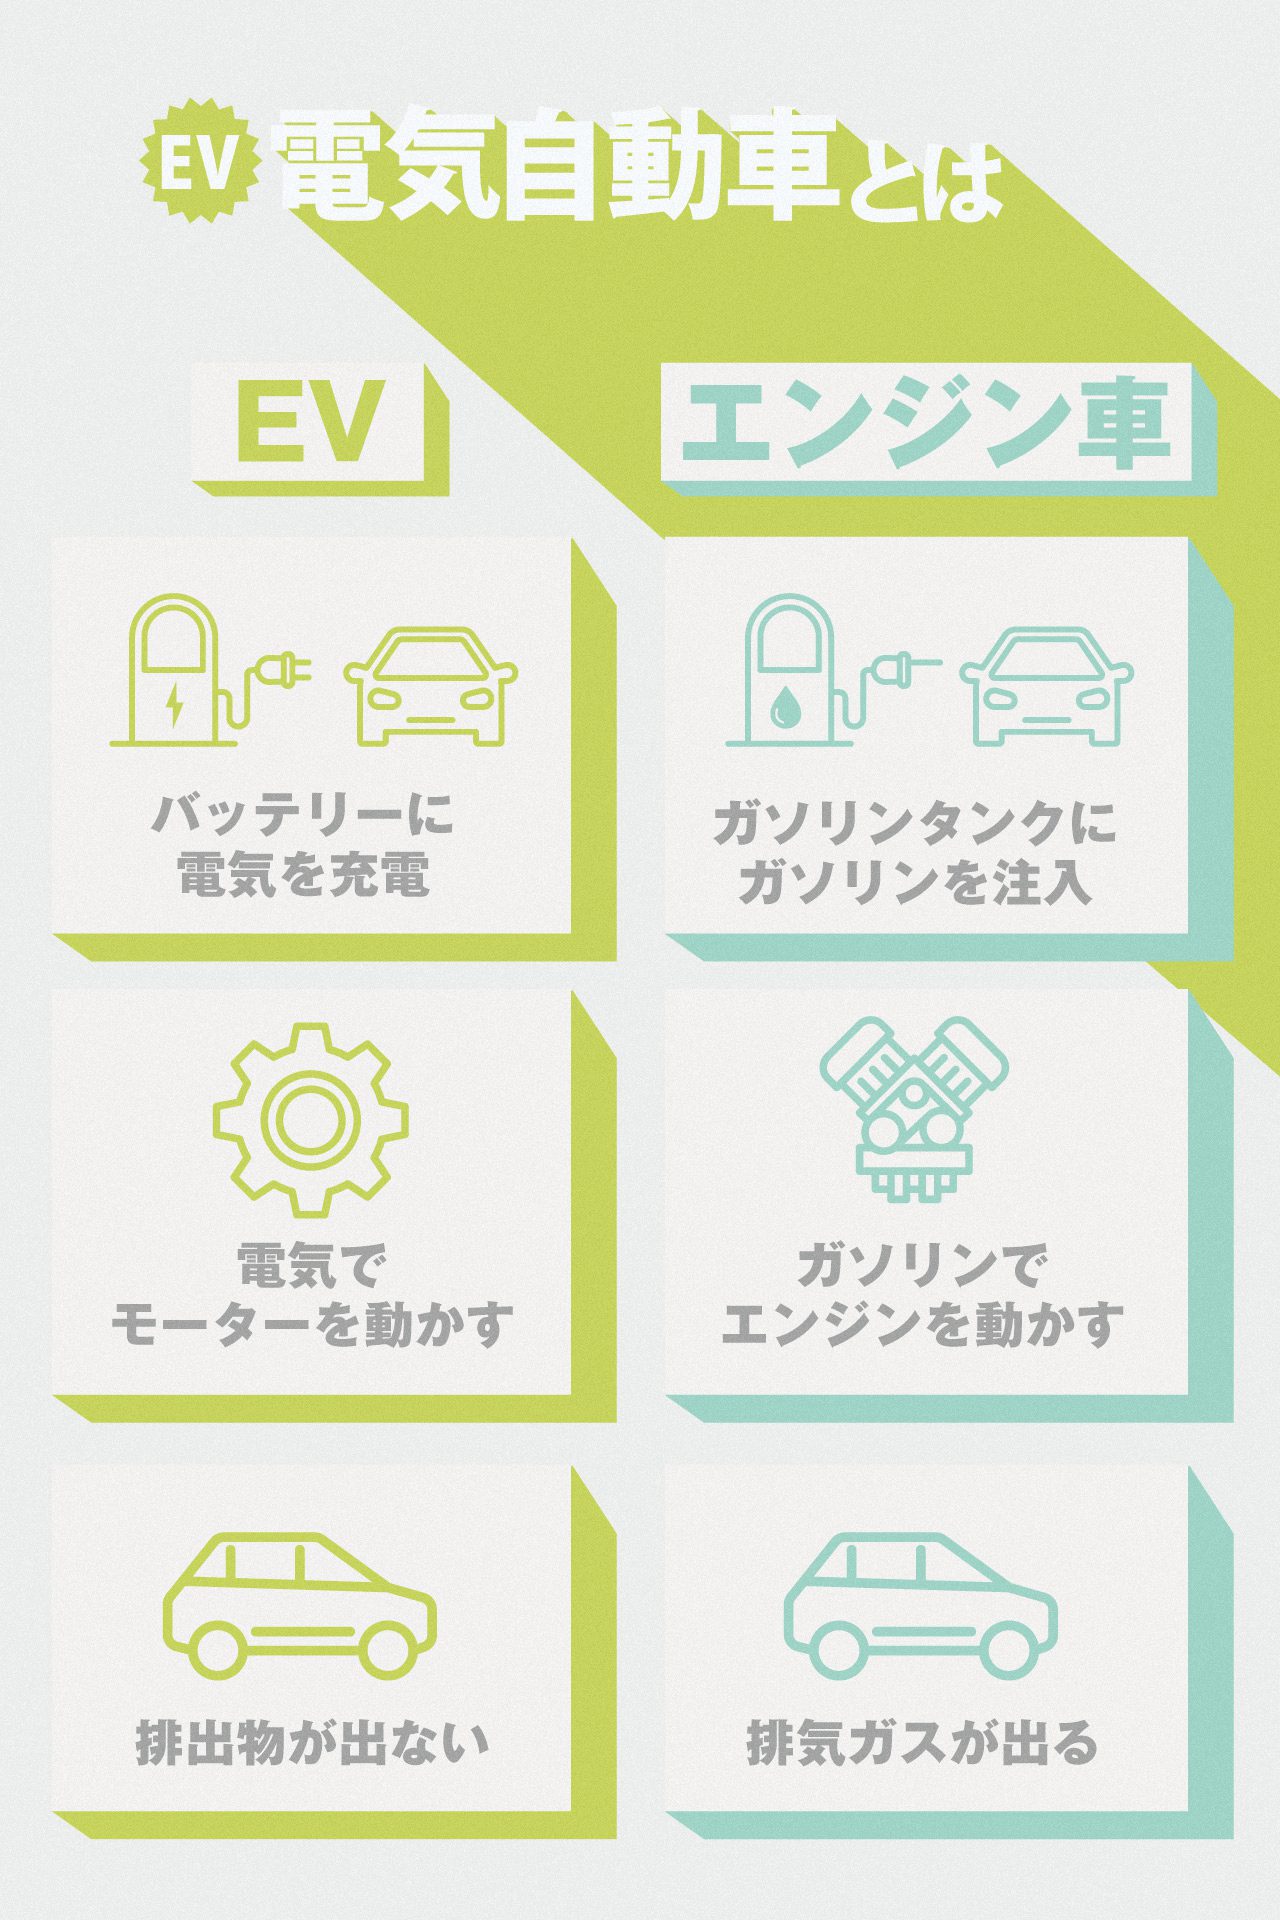 電気自動車(EV車)とは